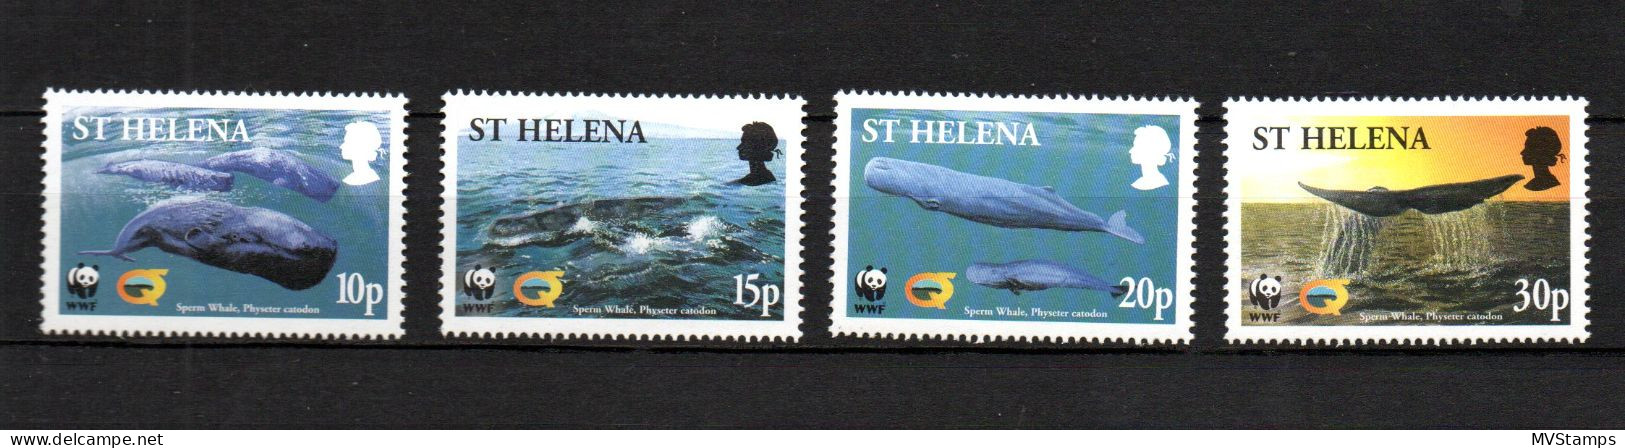 St Helena 2003 Satz WWF/Walfische/Whales Postfrisch - Saint Helena Island